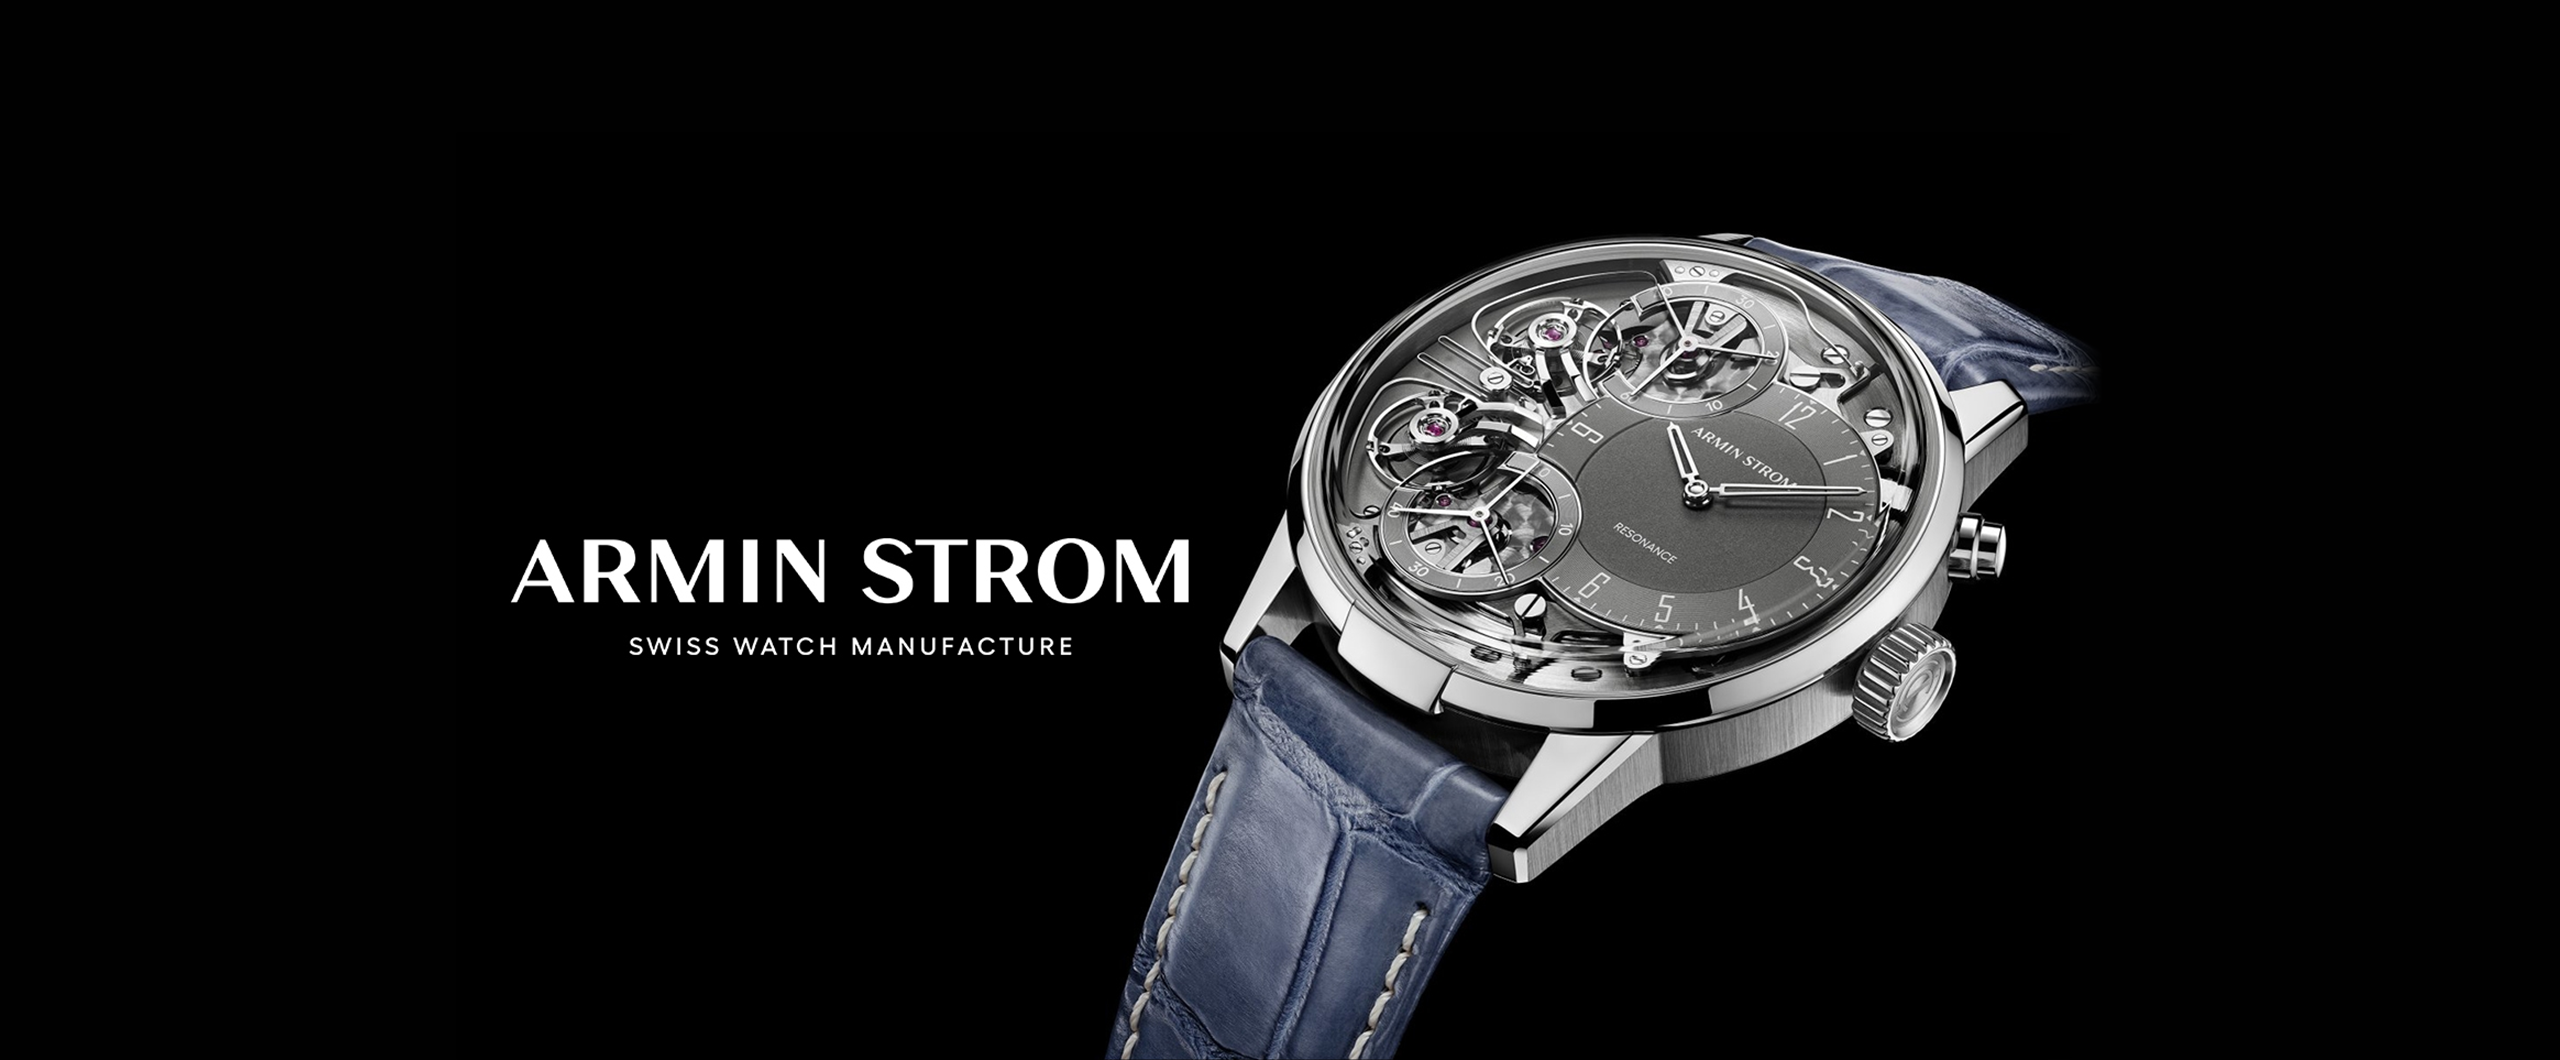 【腕時計】Armin Strom / アーミン・シュトローム